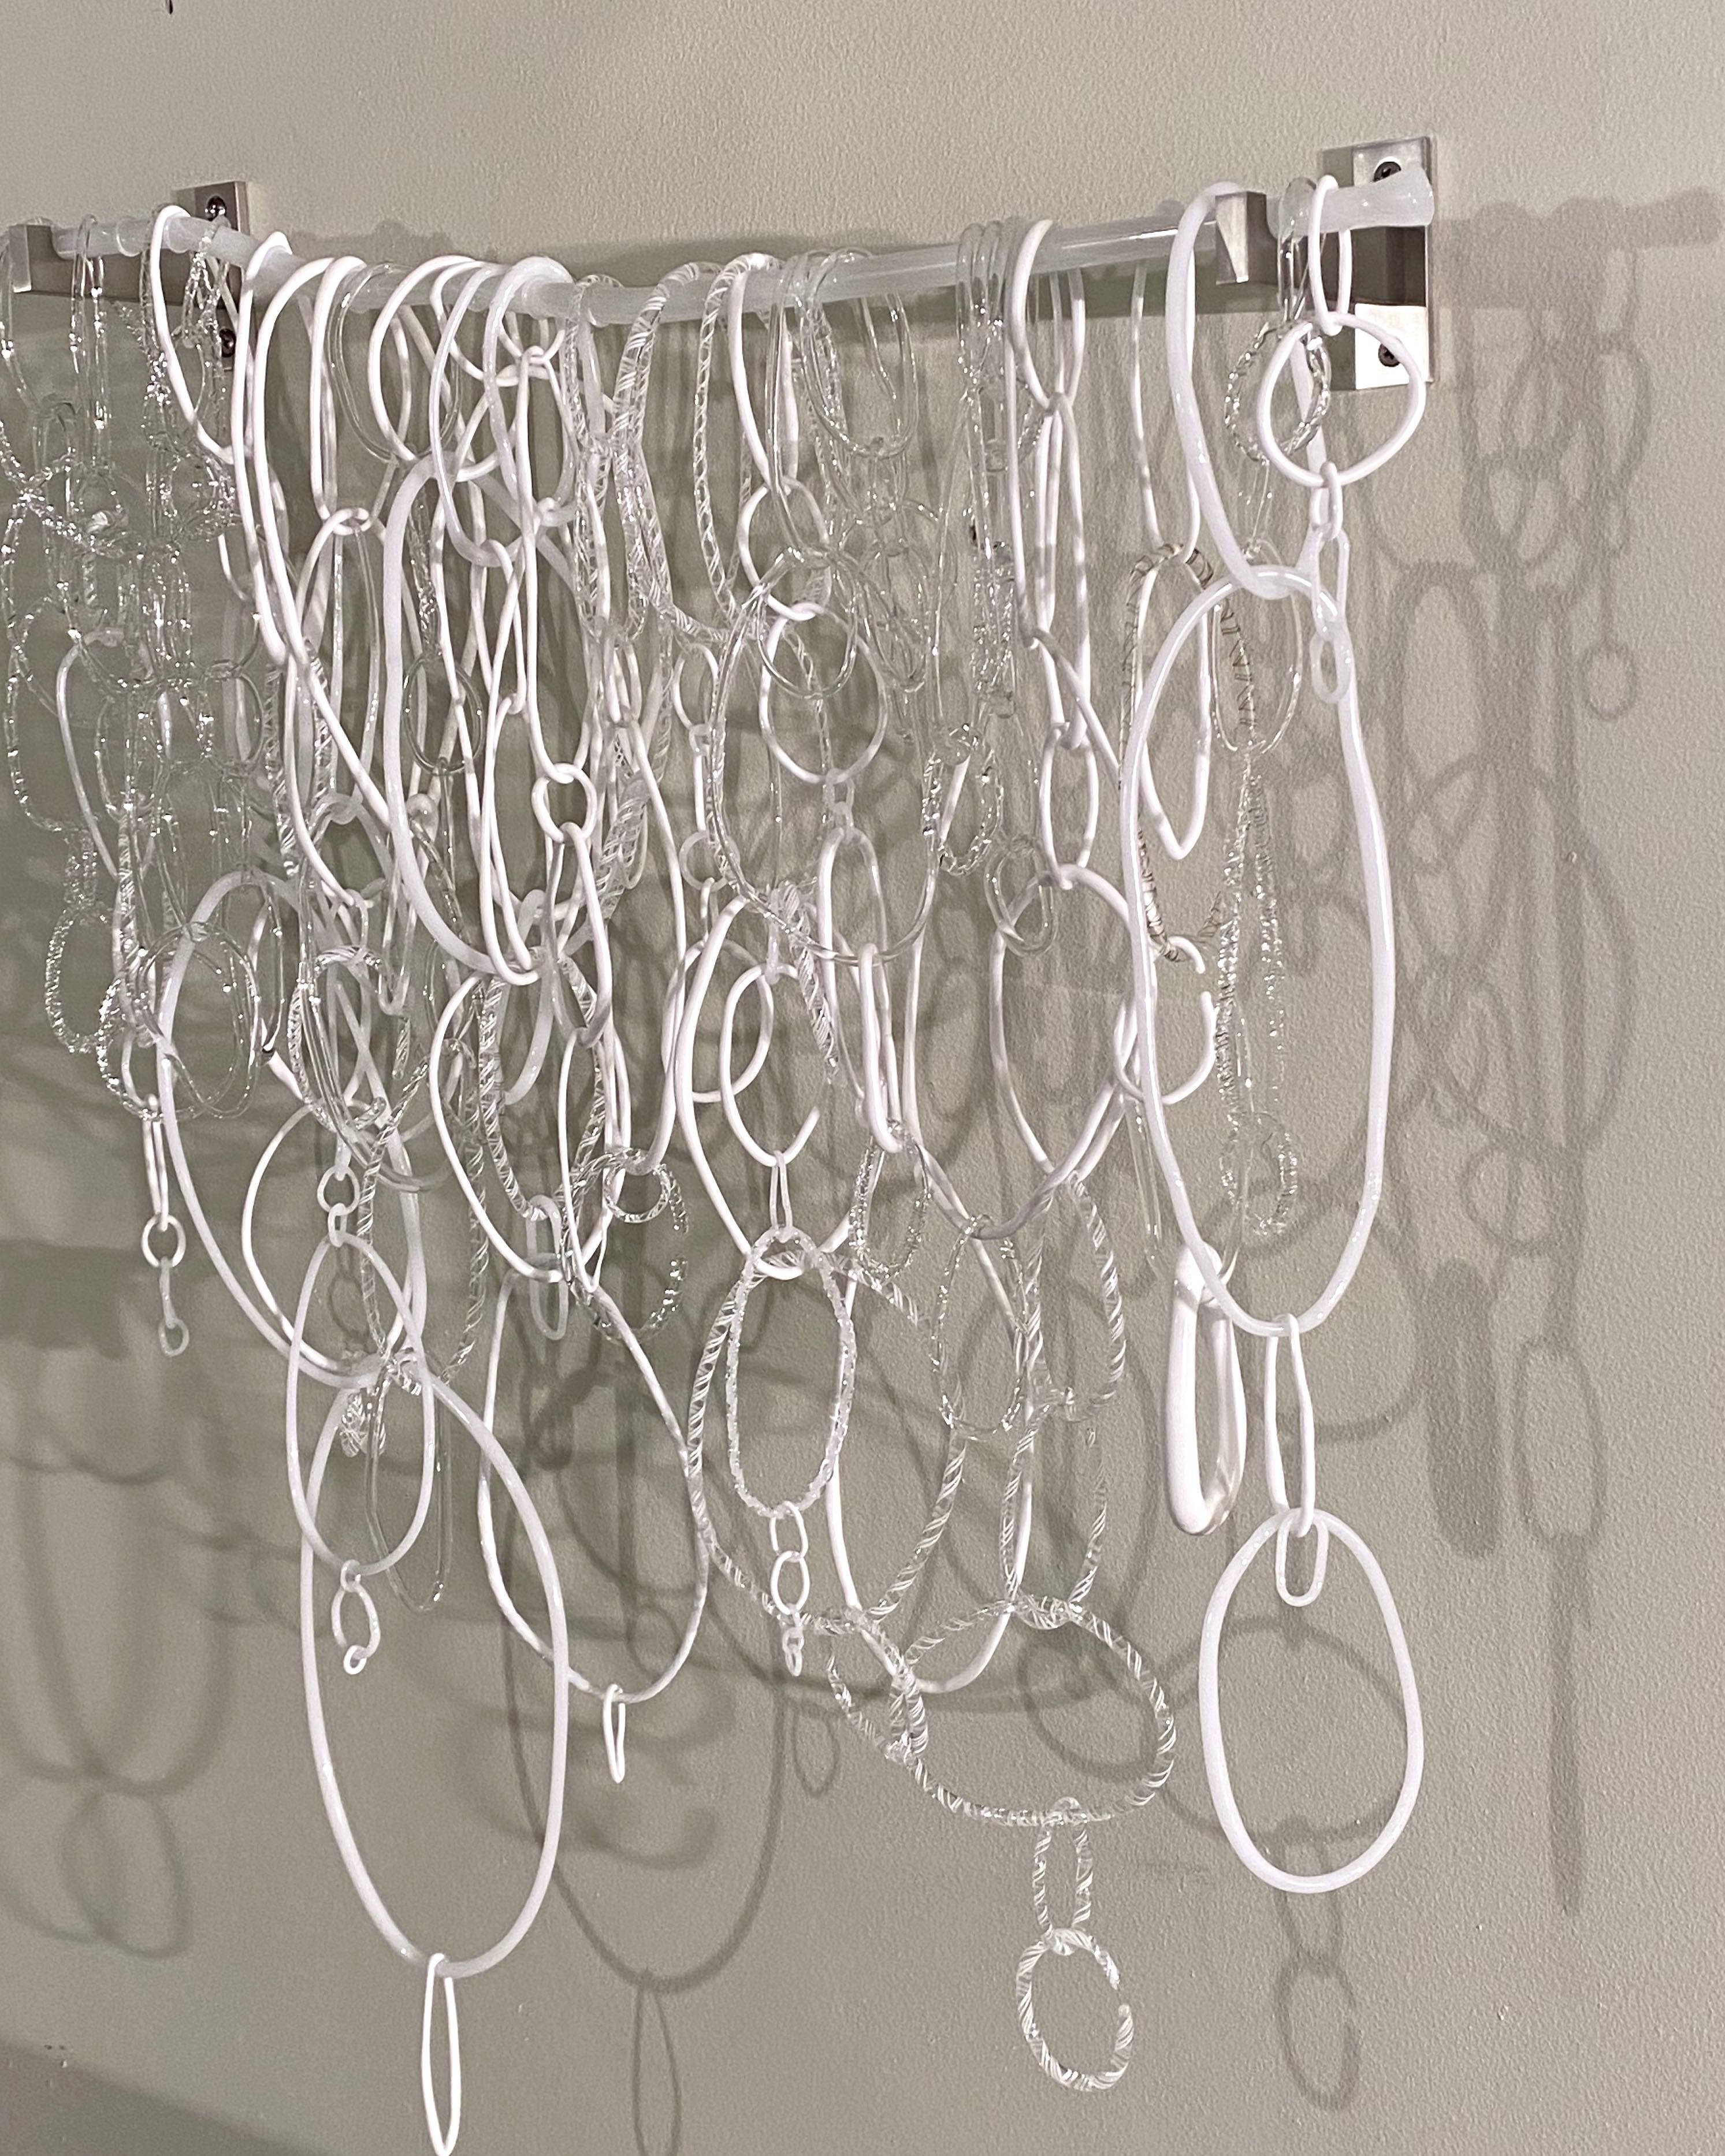 Diese Hängeskulptur besteht aus frei geformten, kreisförmigen Loops in verschiedenen Formen und Texturen aus weißem und klarem, gebranntem Borosilikatglas, die miteinander verbunden sind und an einem unregelmäßig geformten, durchscheinenden weißen